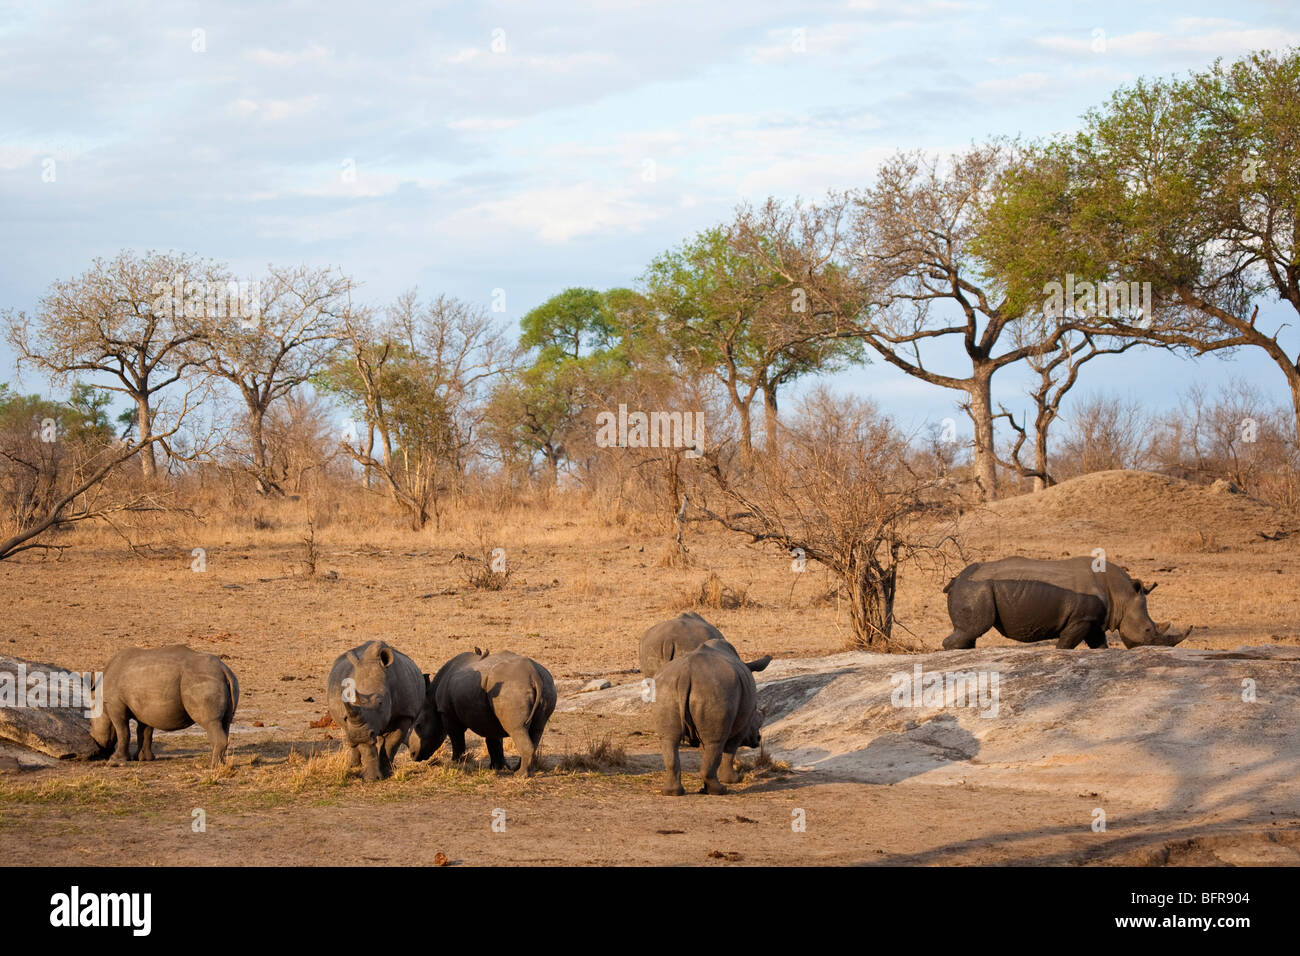 Troupeau de rhinocéros Standing together Banque D'Images